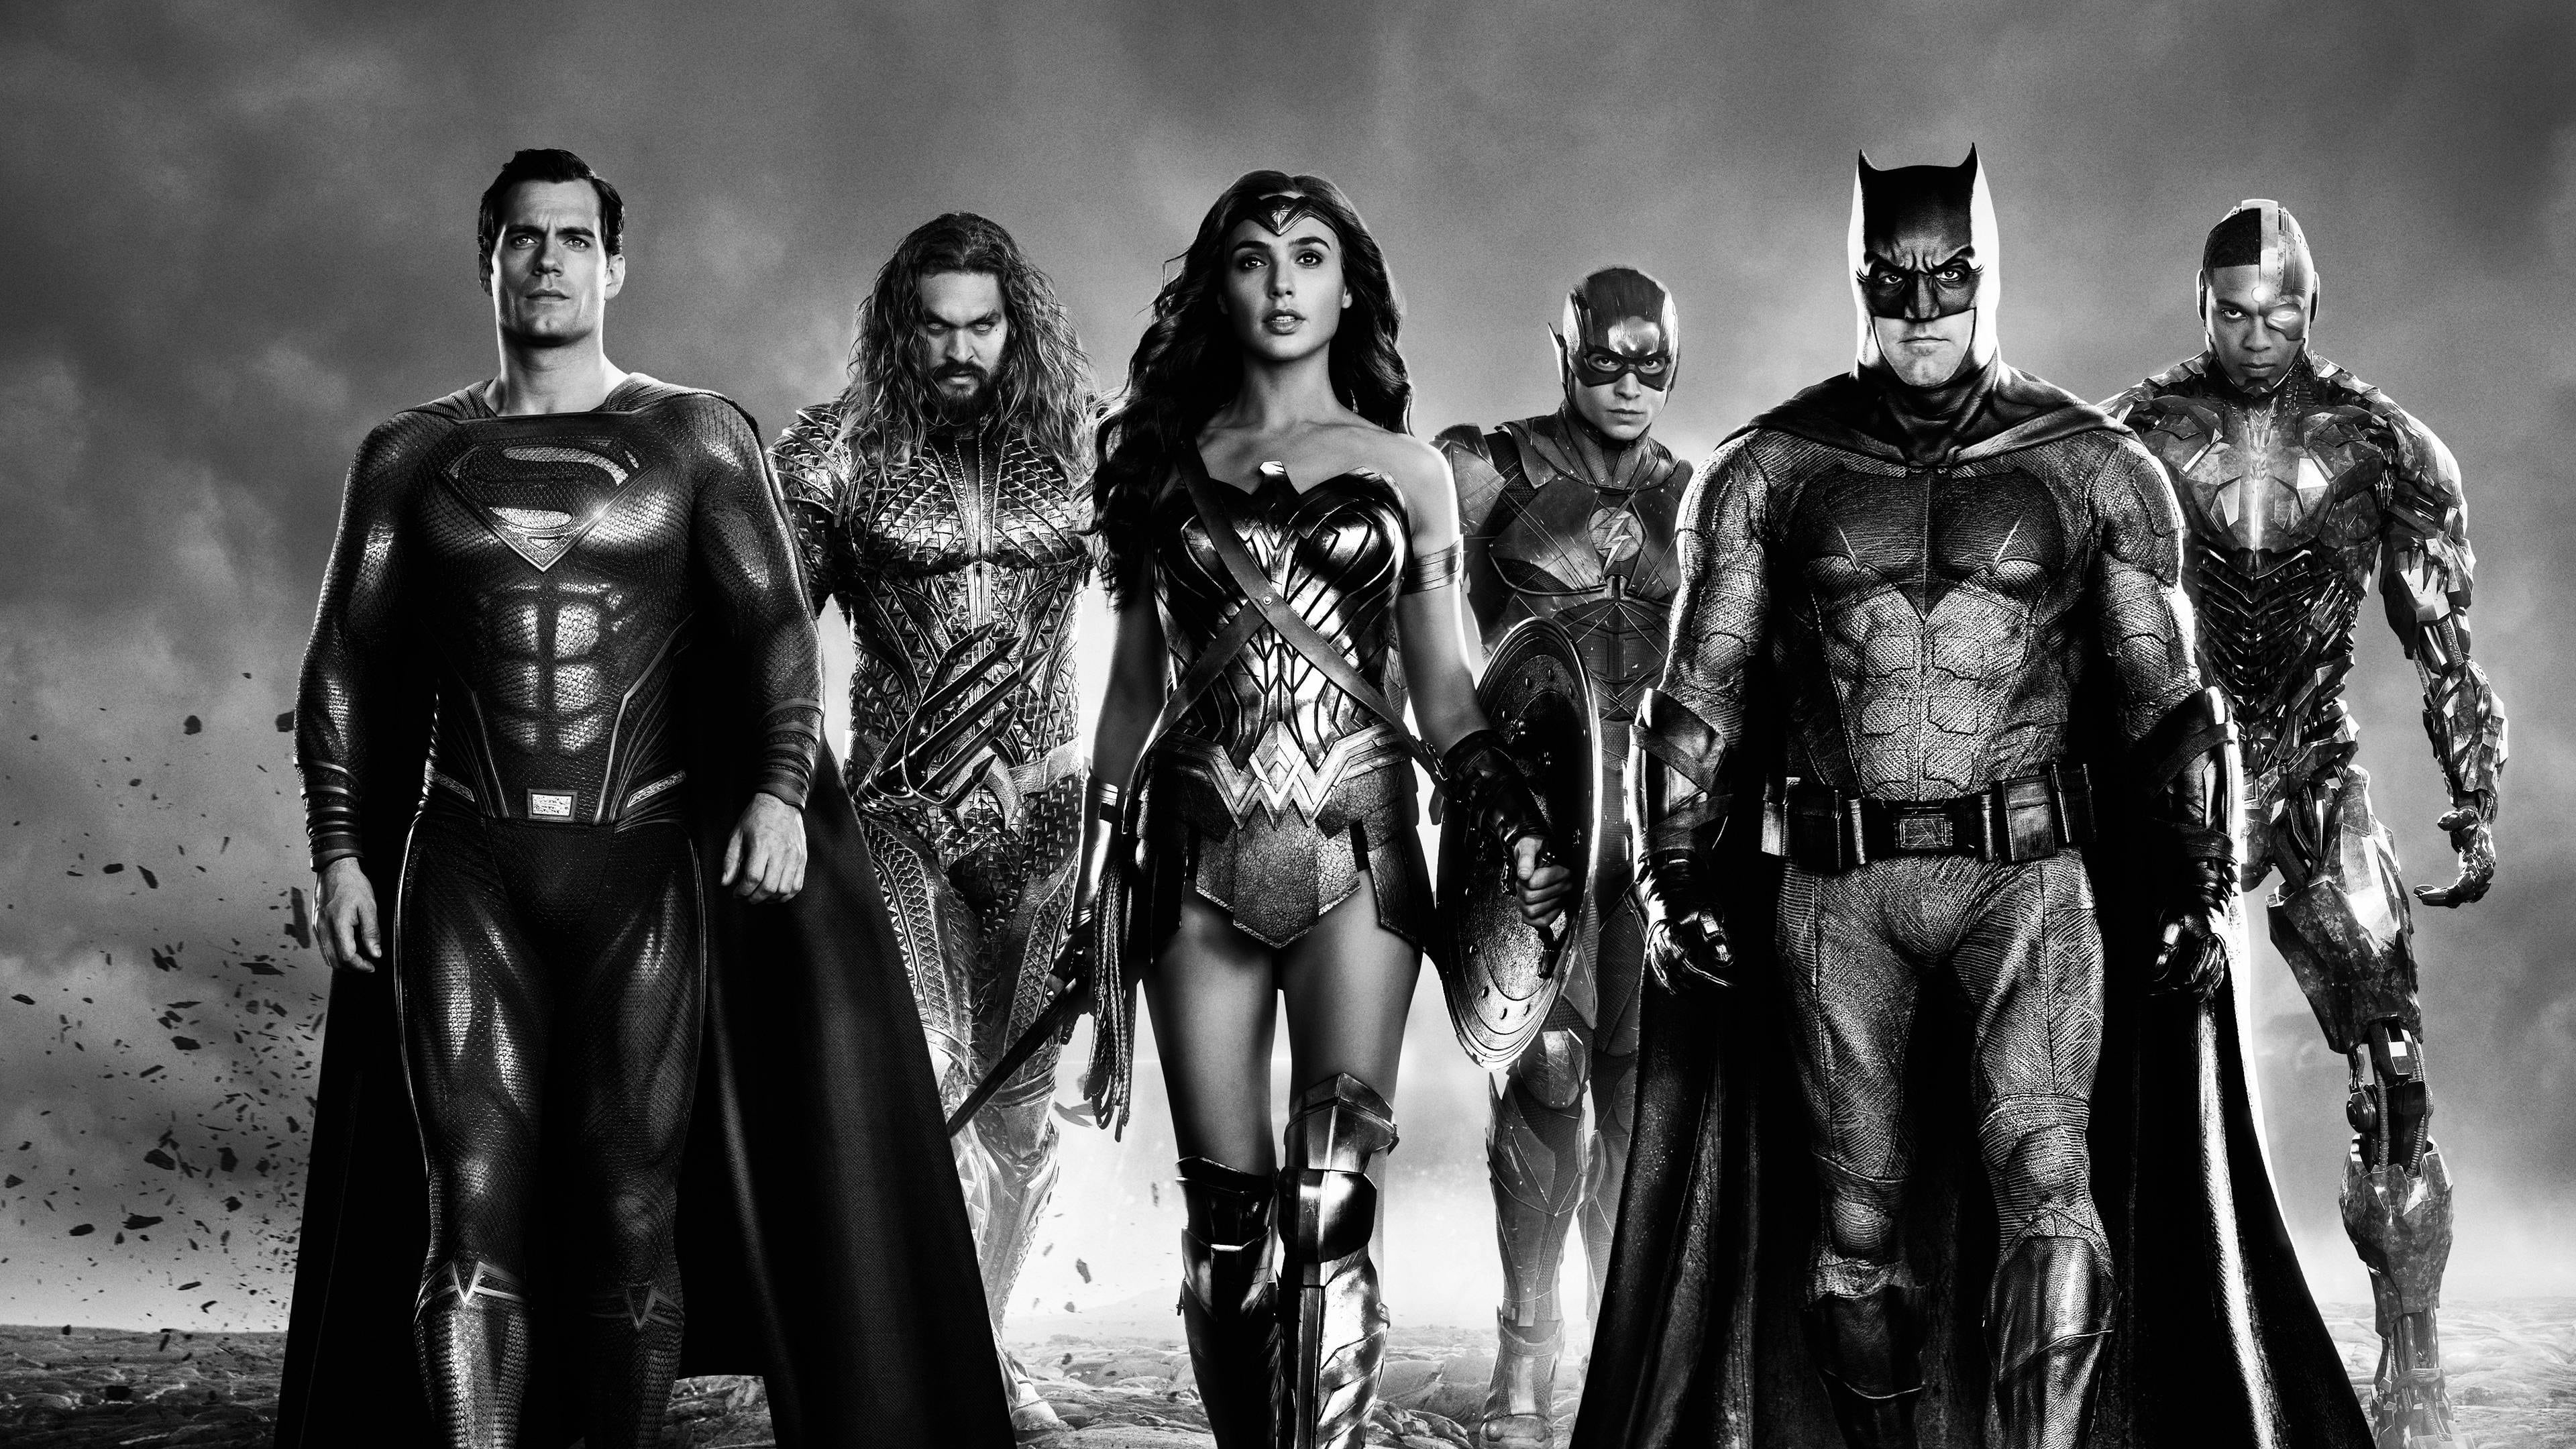 จัสติซ ลีก ของ แซ็ค สไนเดอร์ Zack Snyder's Justice League ออนไลน์โดยสมบูรณ์ในปี 2021